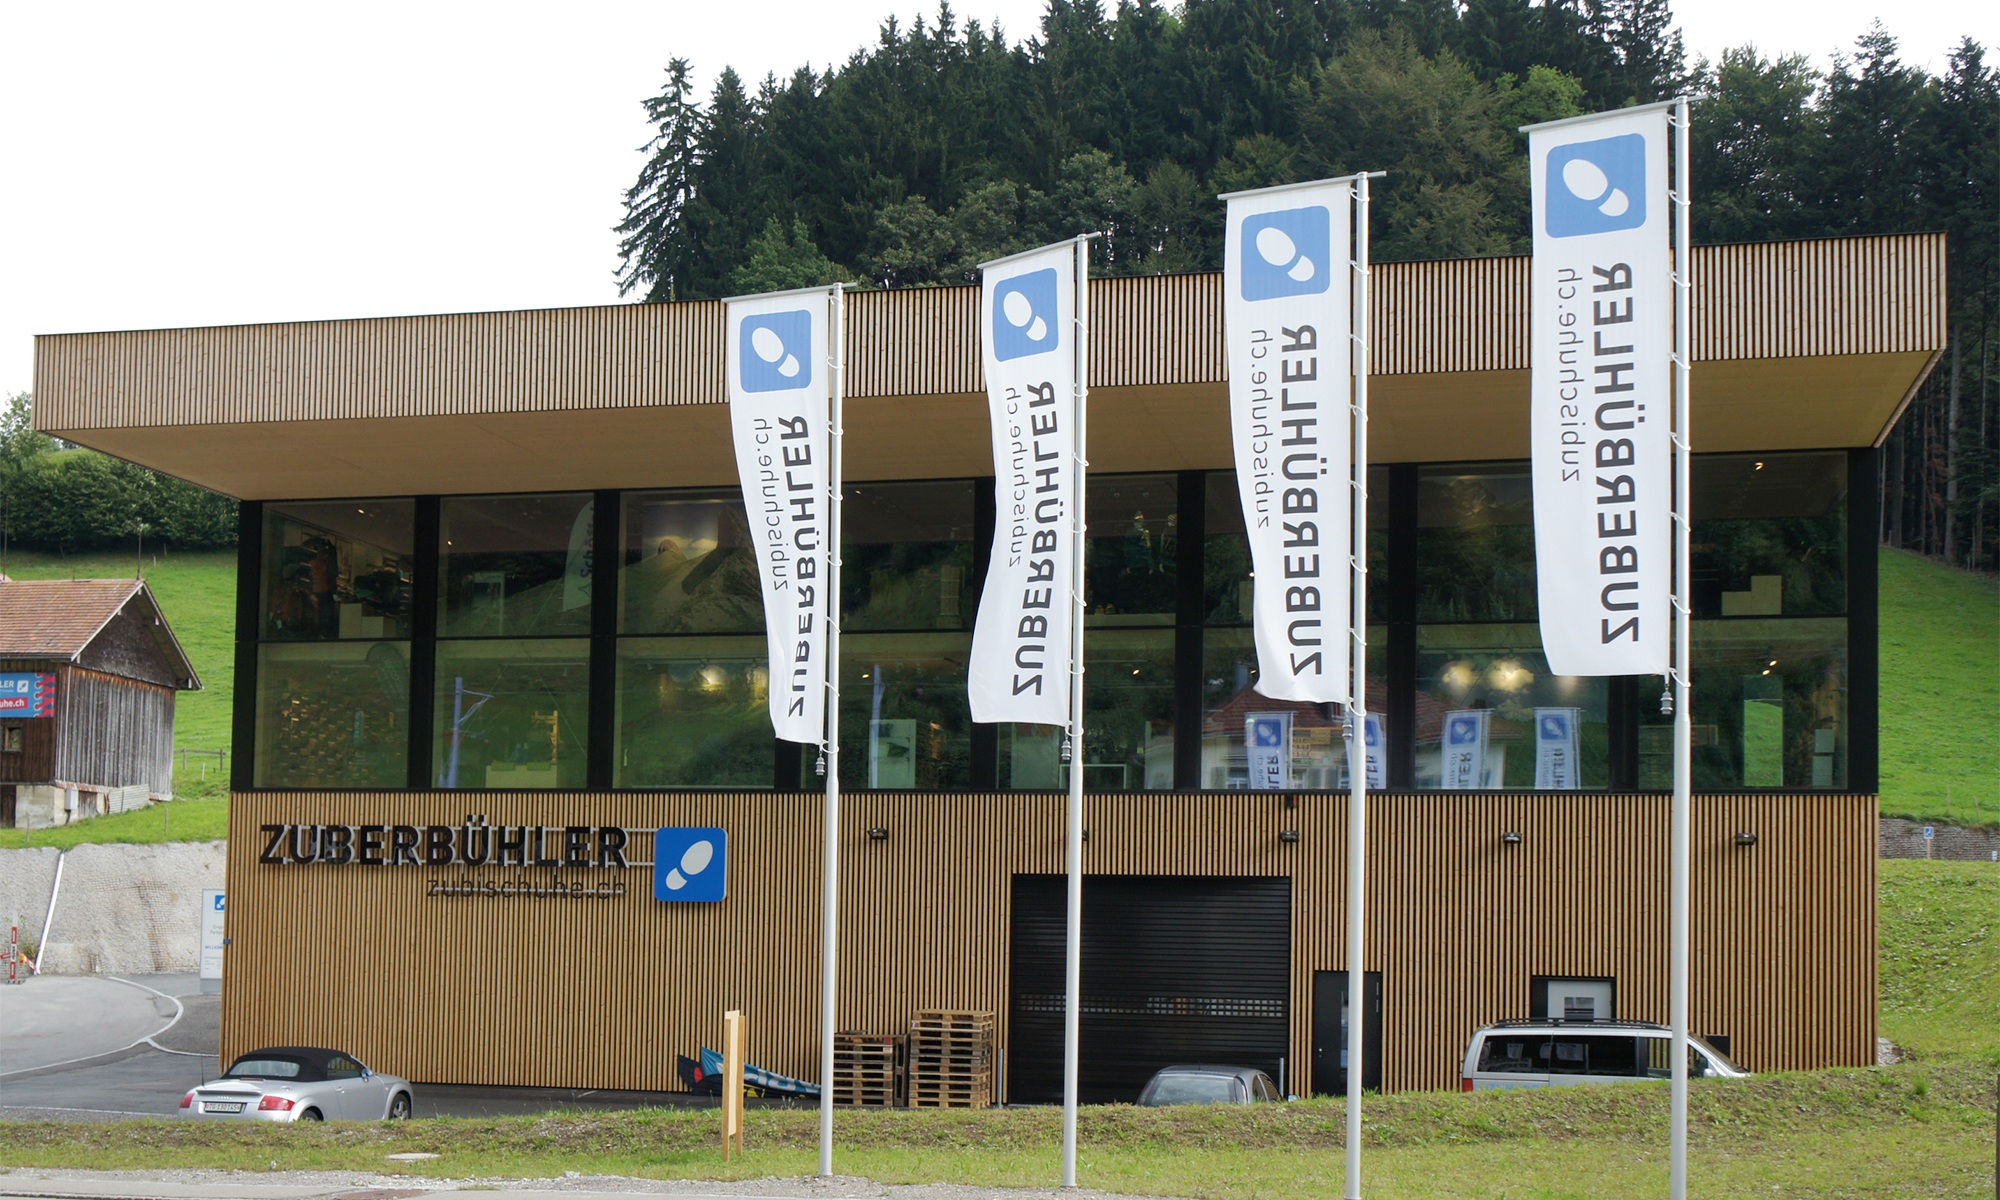 Vue extérieure du bâtiment industriel de Zuberbühler à Herisau avec des drapeaux au premier plan.